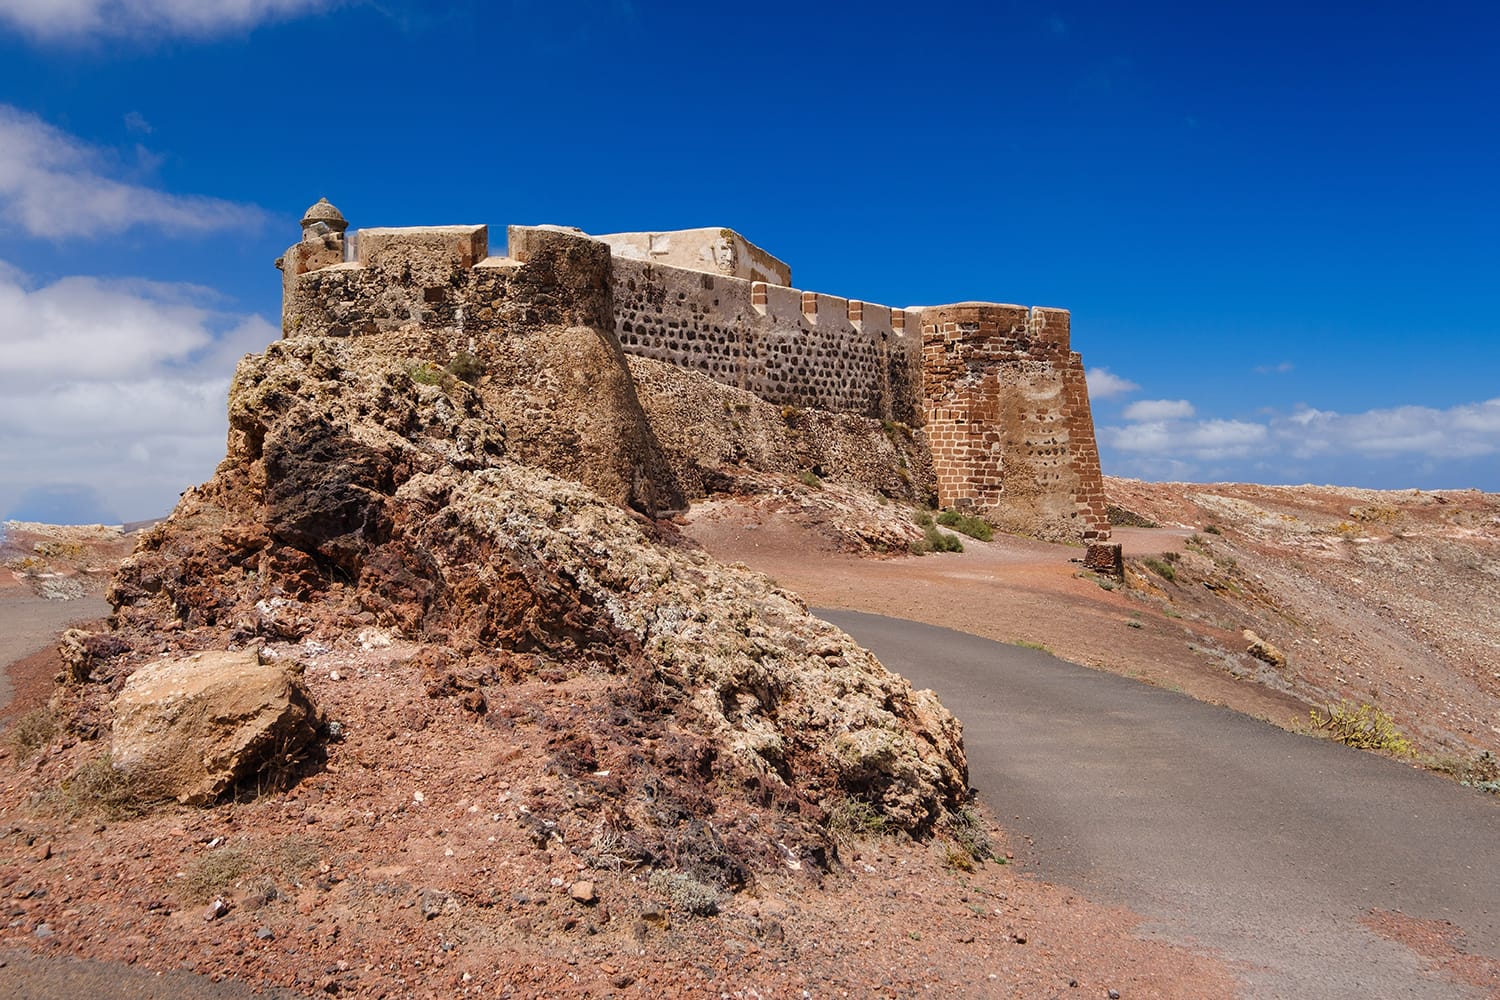 Santa barbara castle built on volcano crater on Lanzarote, Canary Islands, Spain